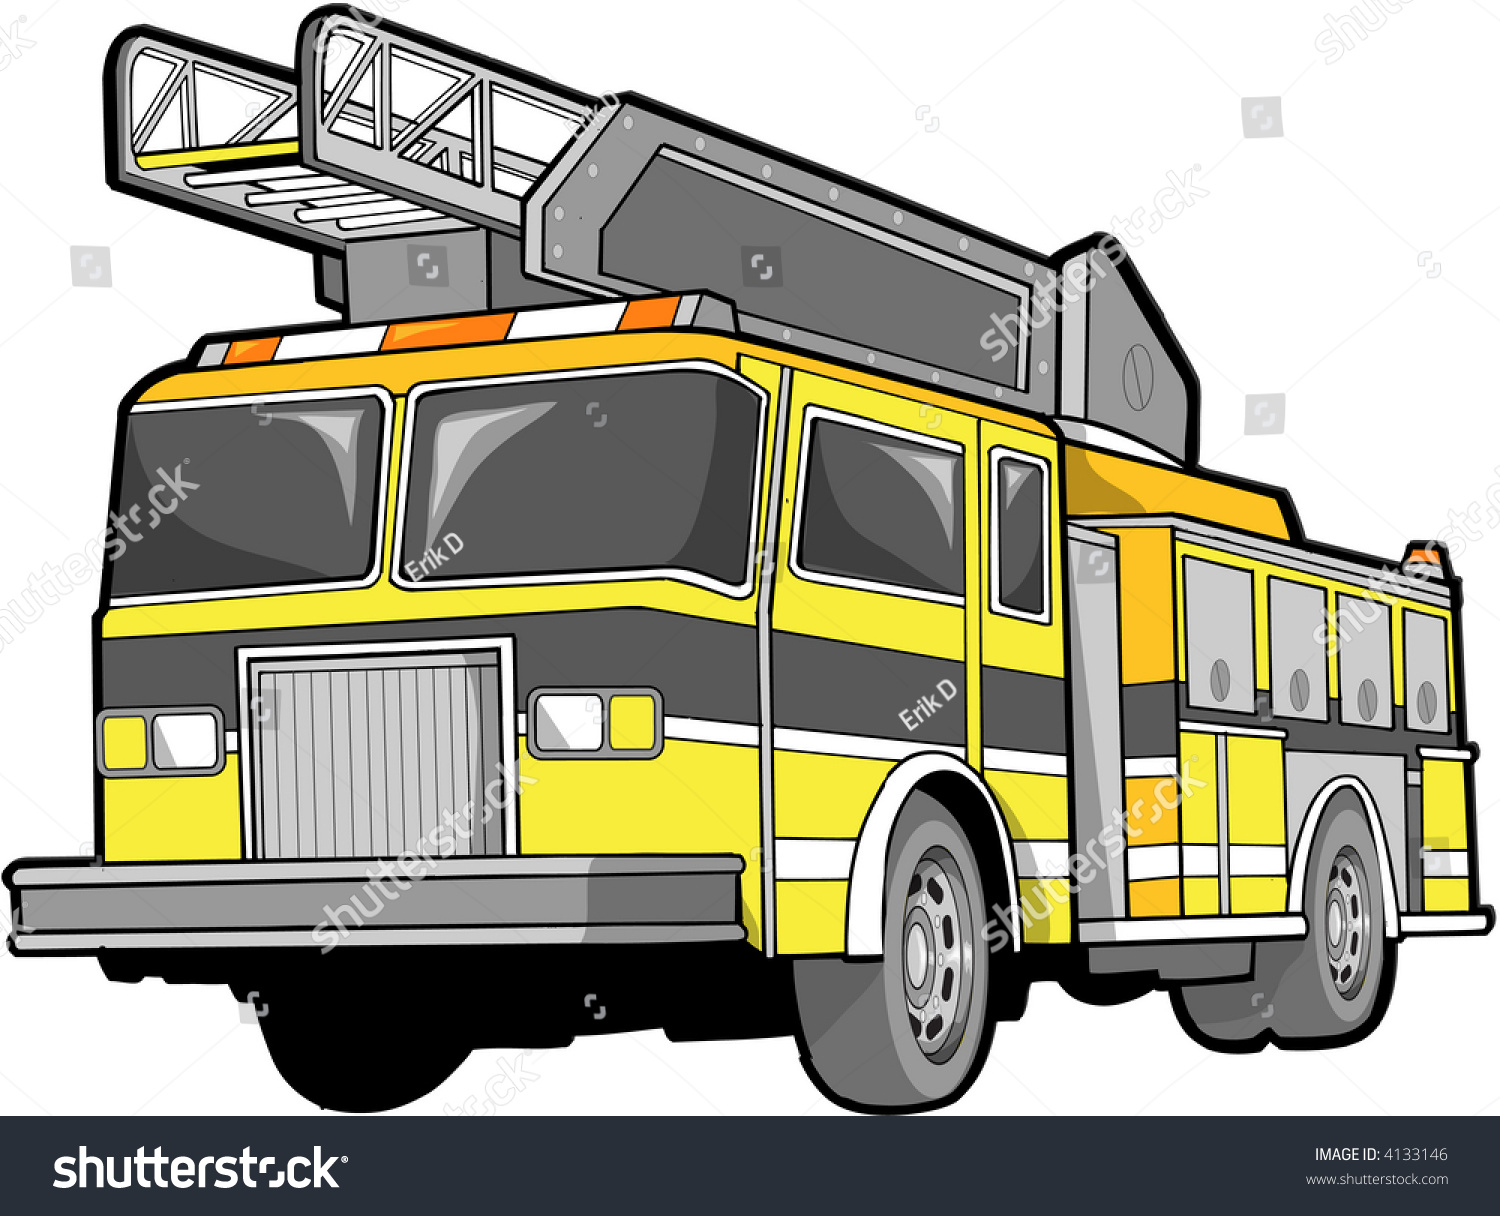 Yellow fire truck.